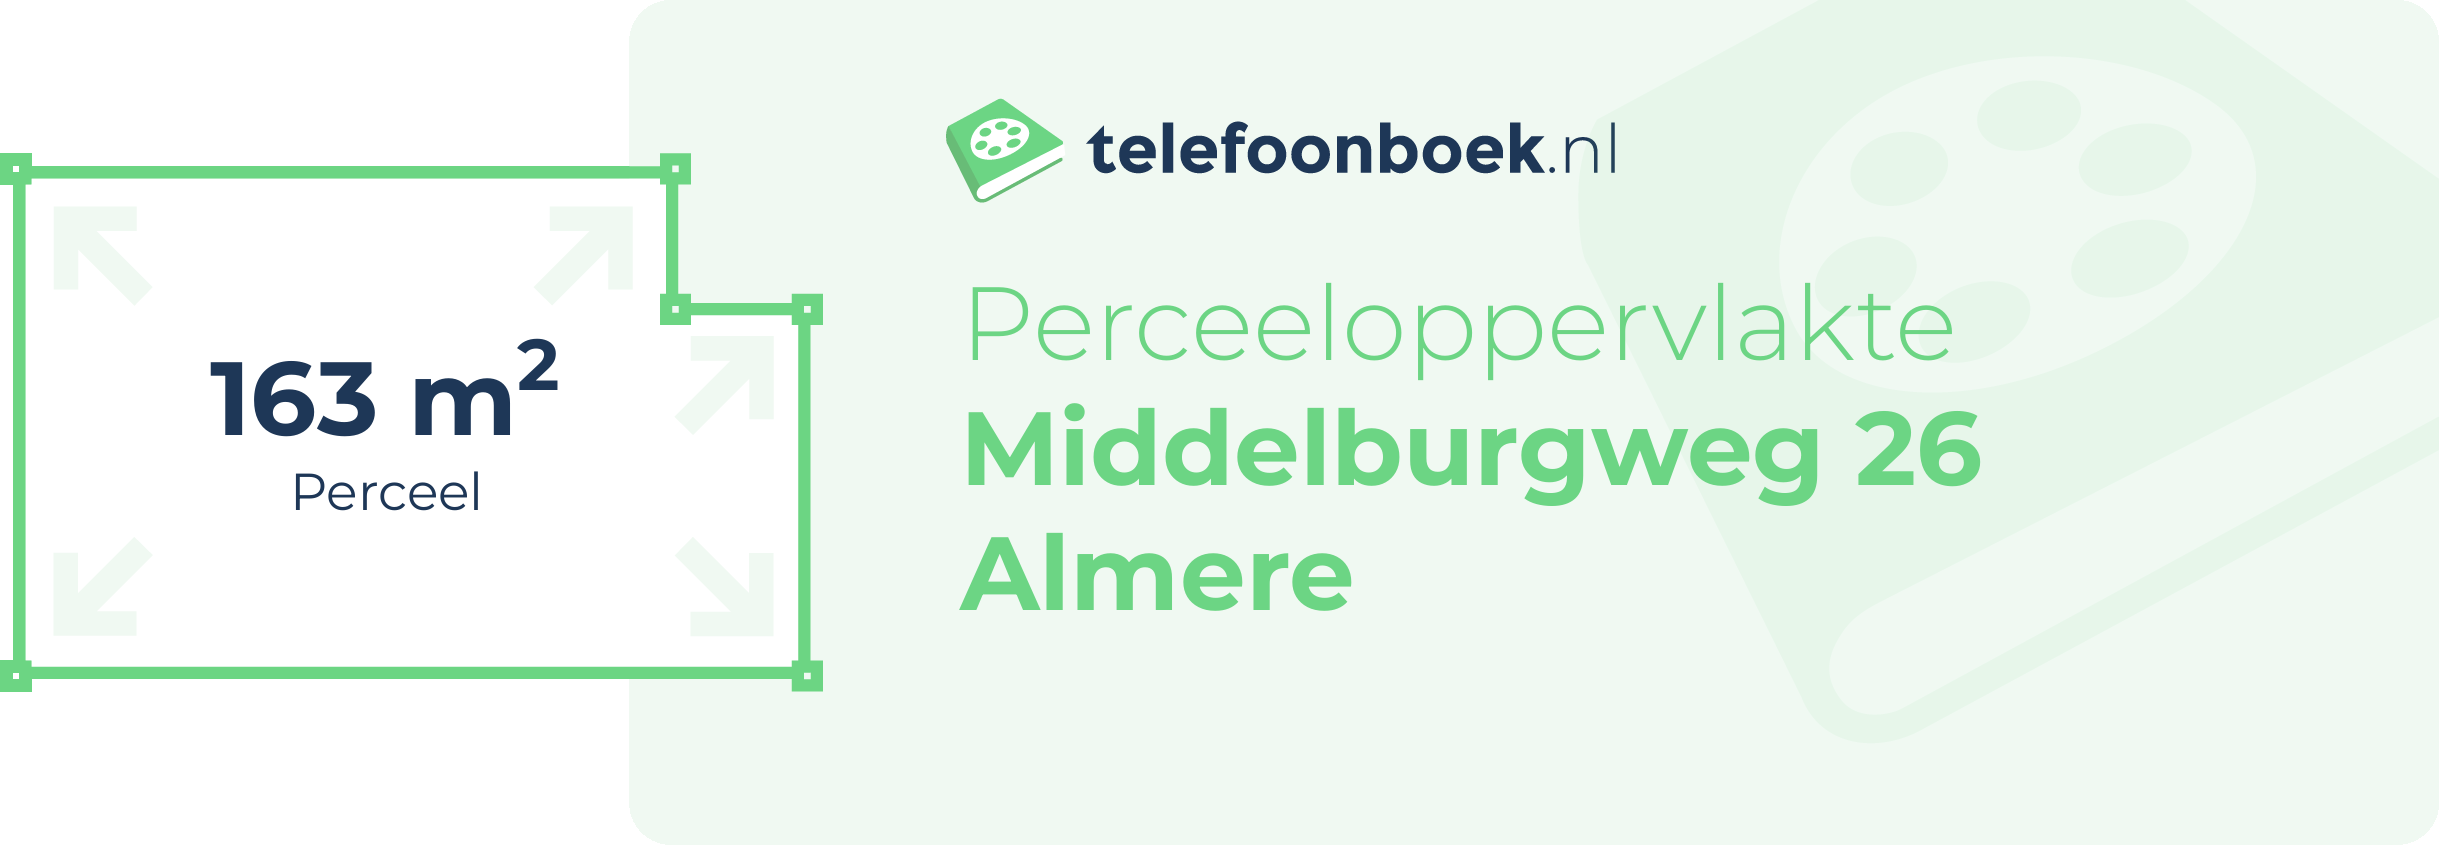 Perceeloppervlakte Middelburgweg 26 Almere